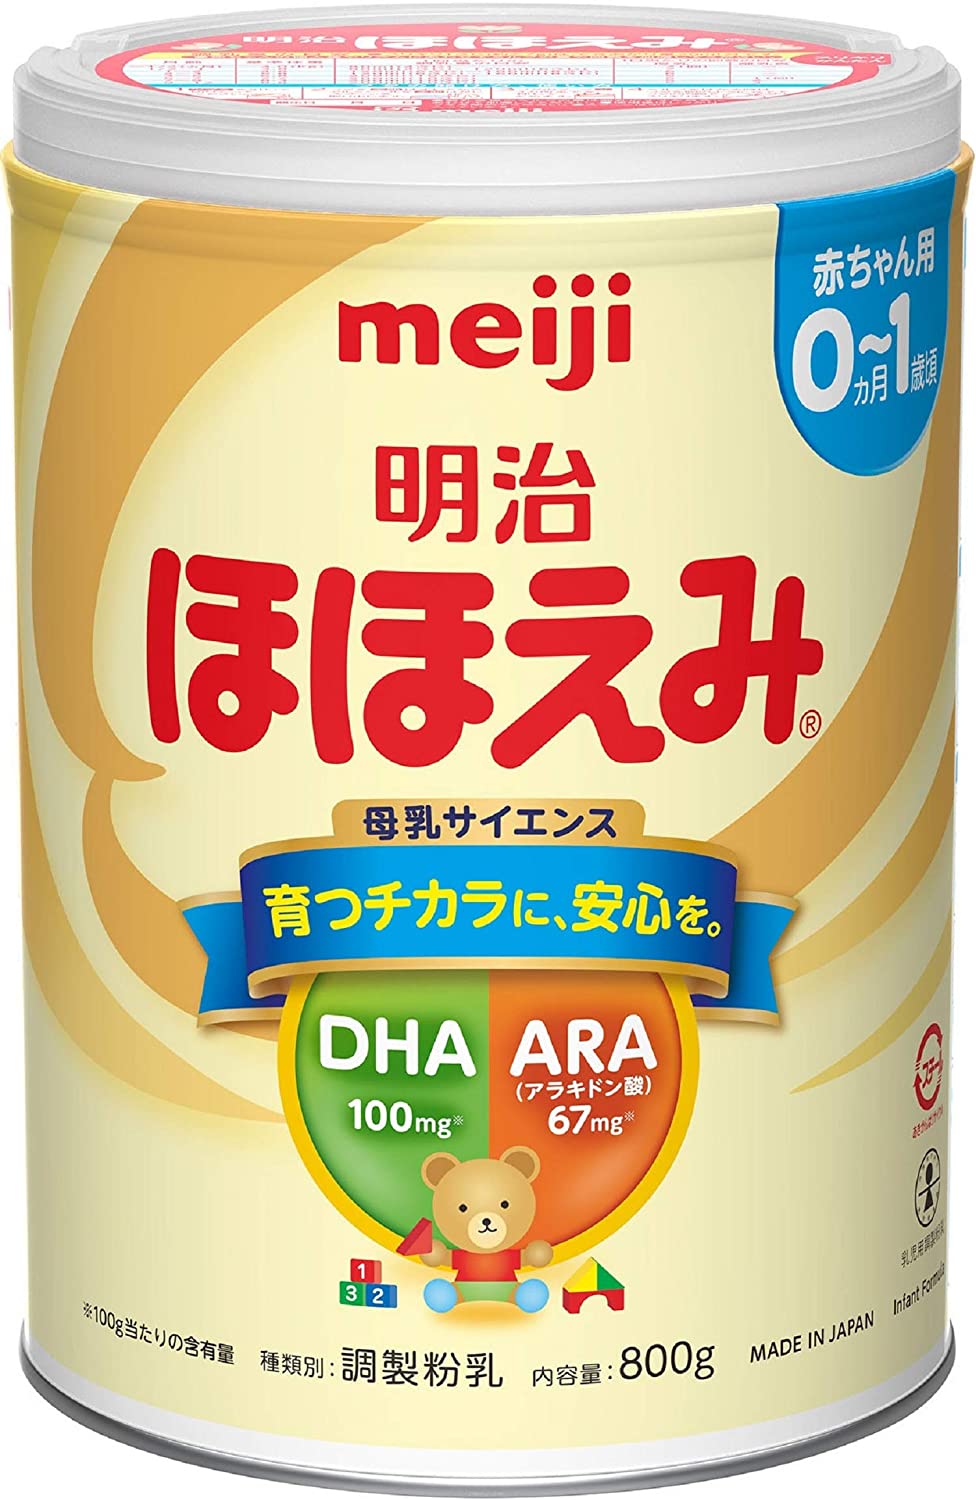 明治ほほえみ800g x4個粉ミルク4缶セット商品– WAFUU JAPAN